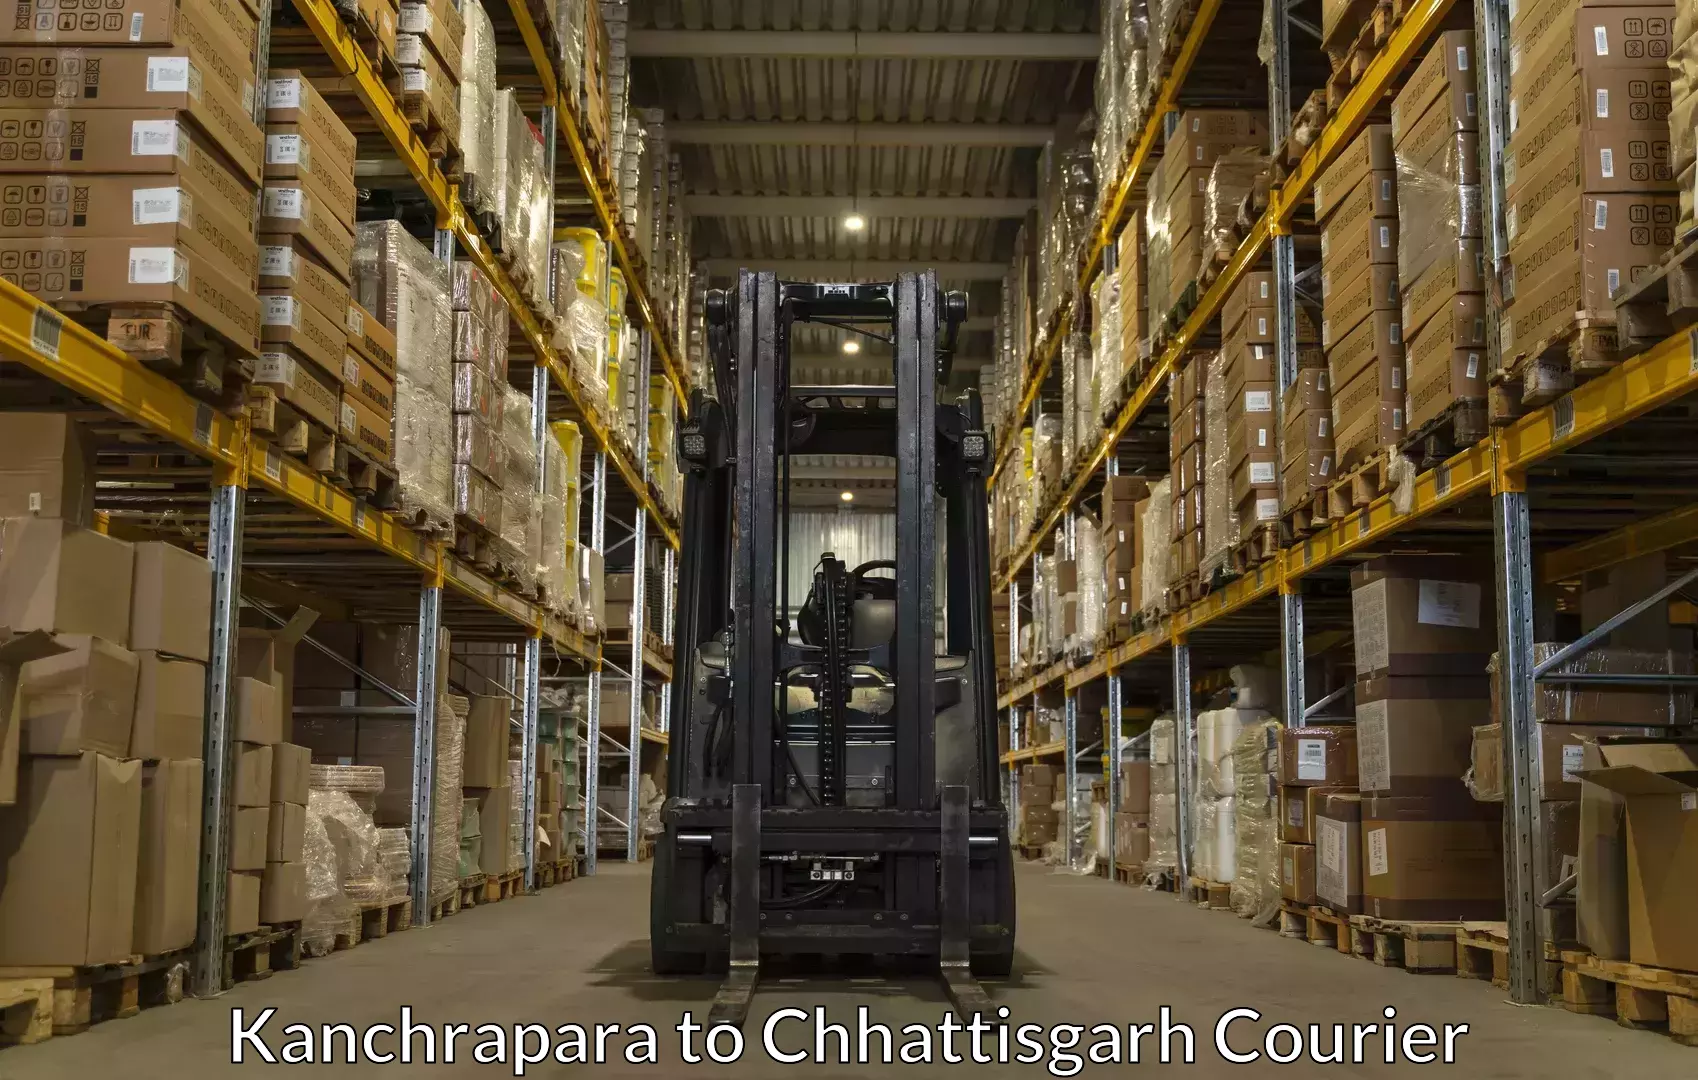 Baggage transport management Kanchrapara to Chhattisgarh